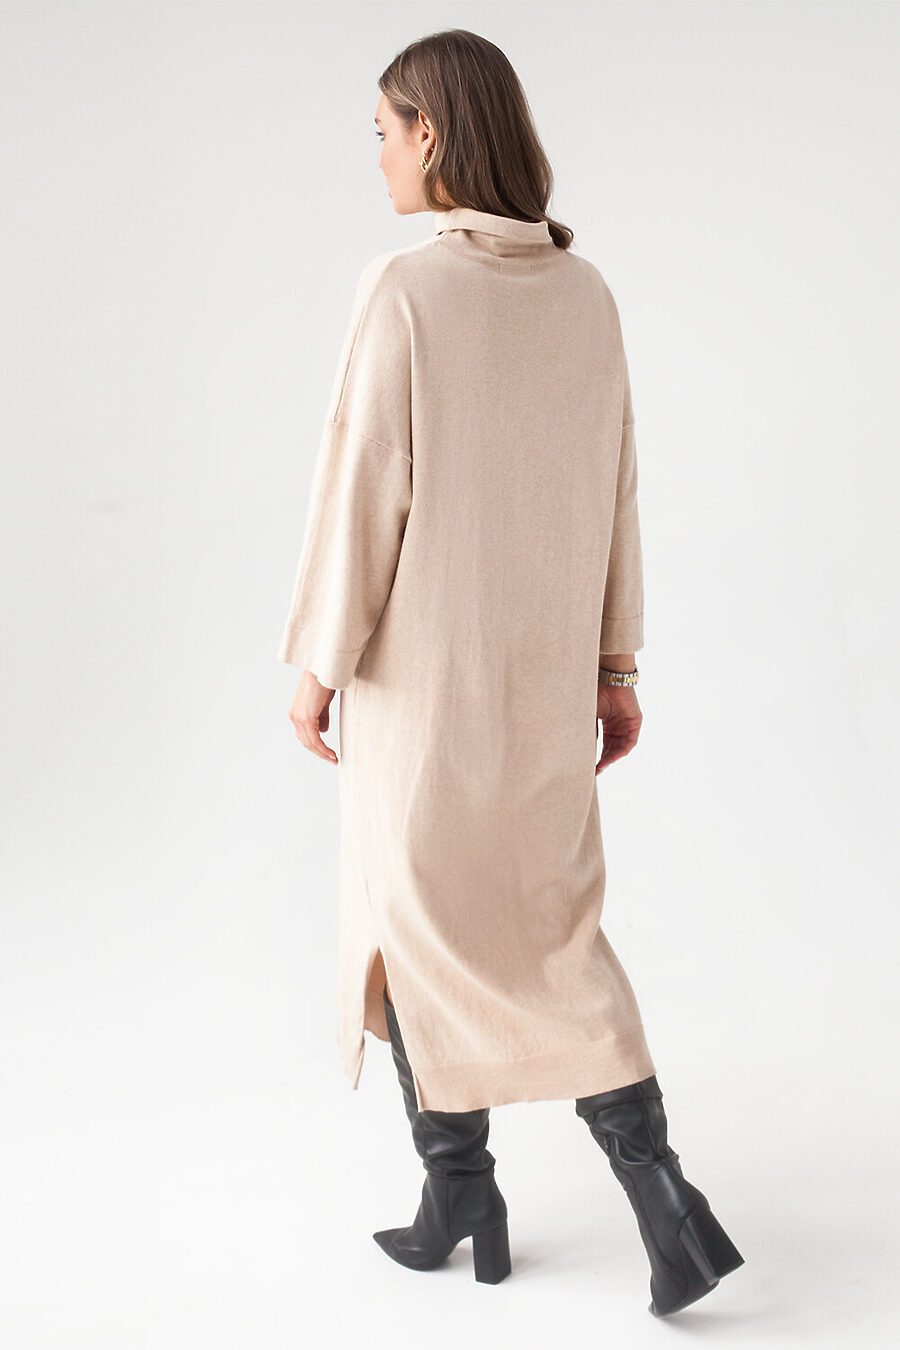 Платье для женщин VILATTE 795702 купить оптом от производителя. Совместная покупка женской одежды в OptMoyo